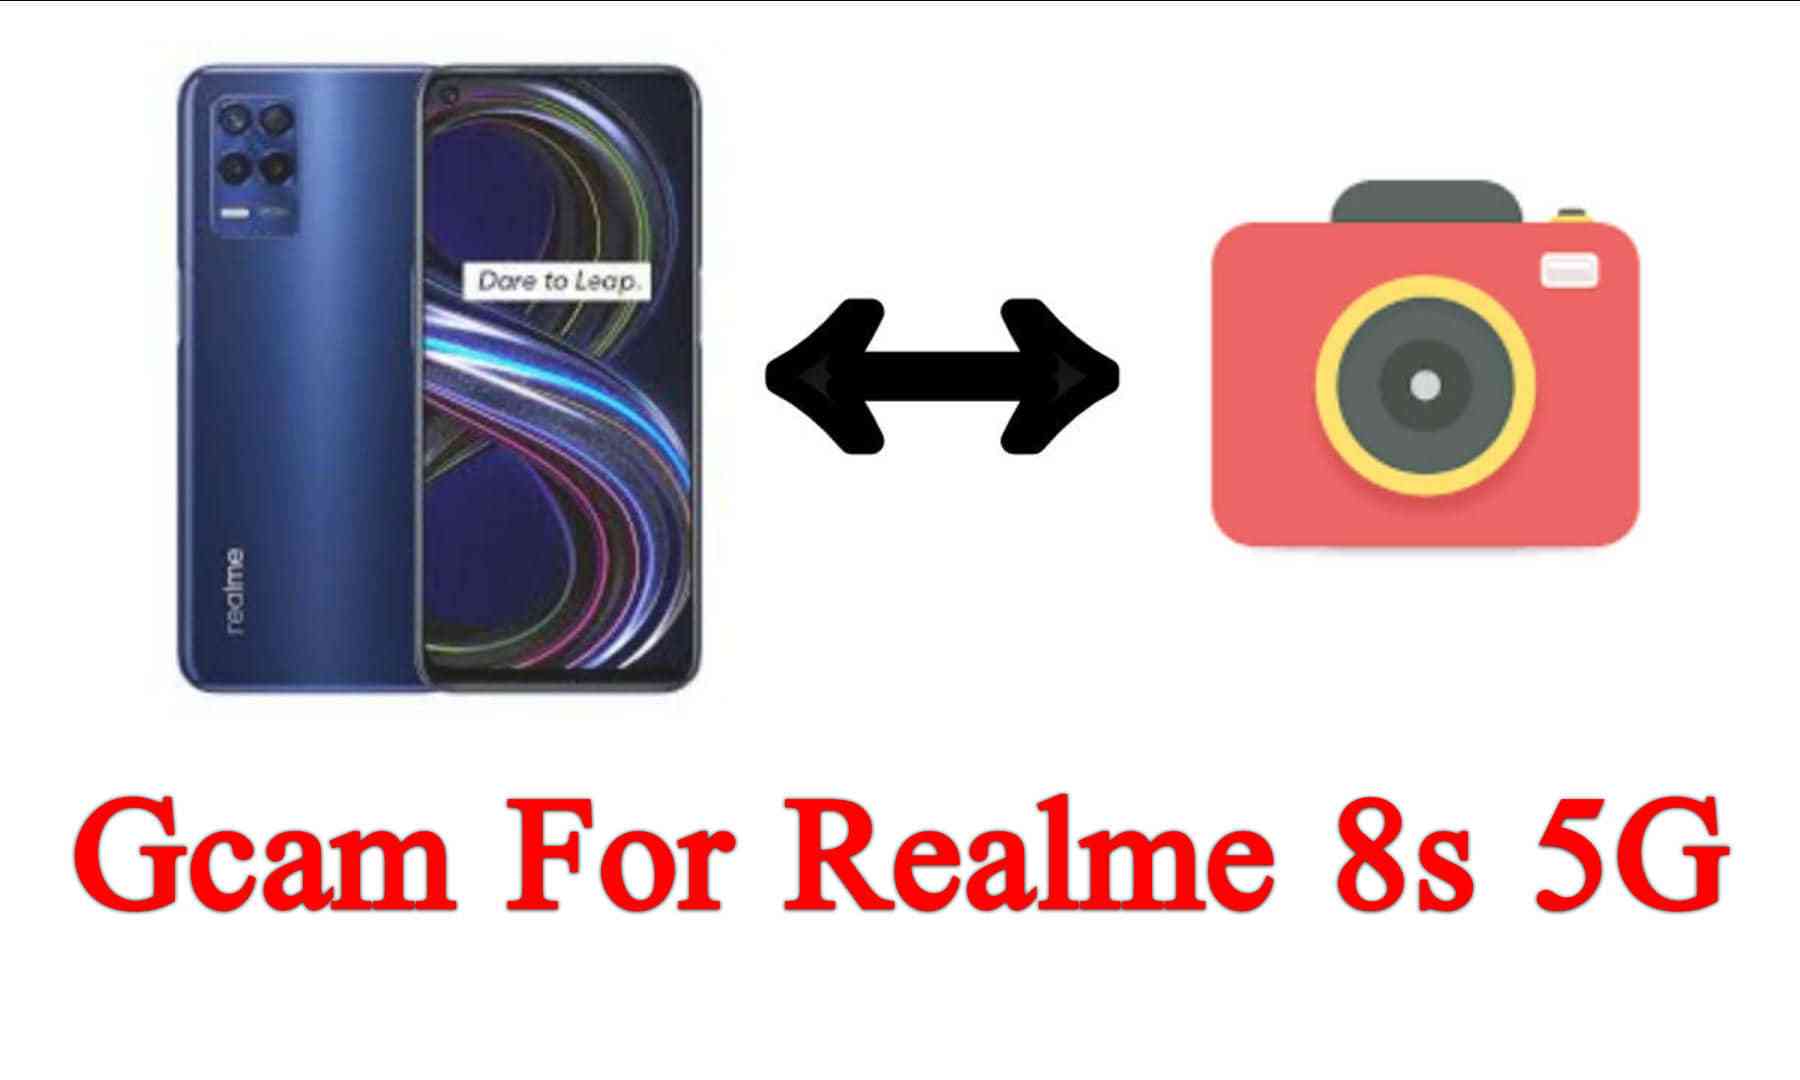 GCam for Realme 8s 5G